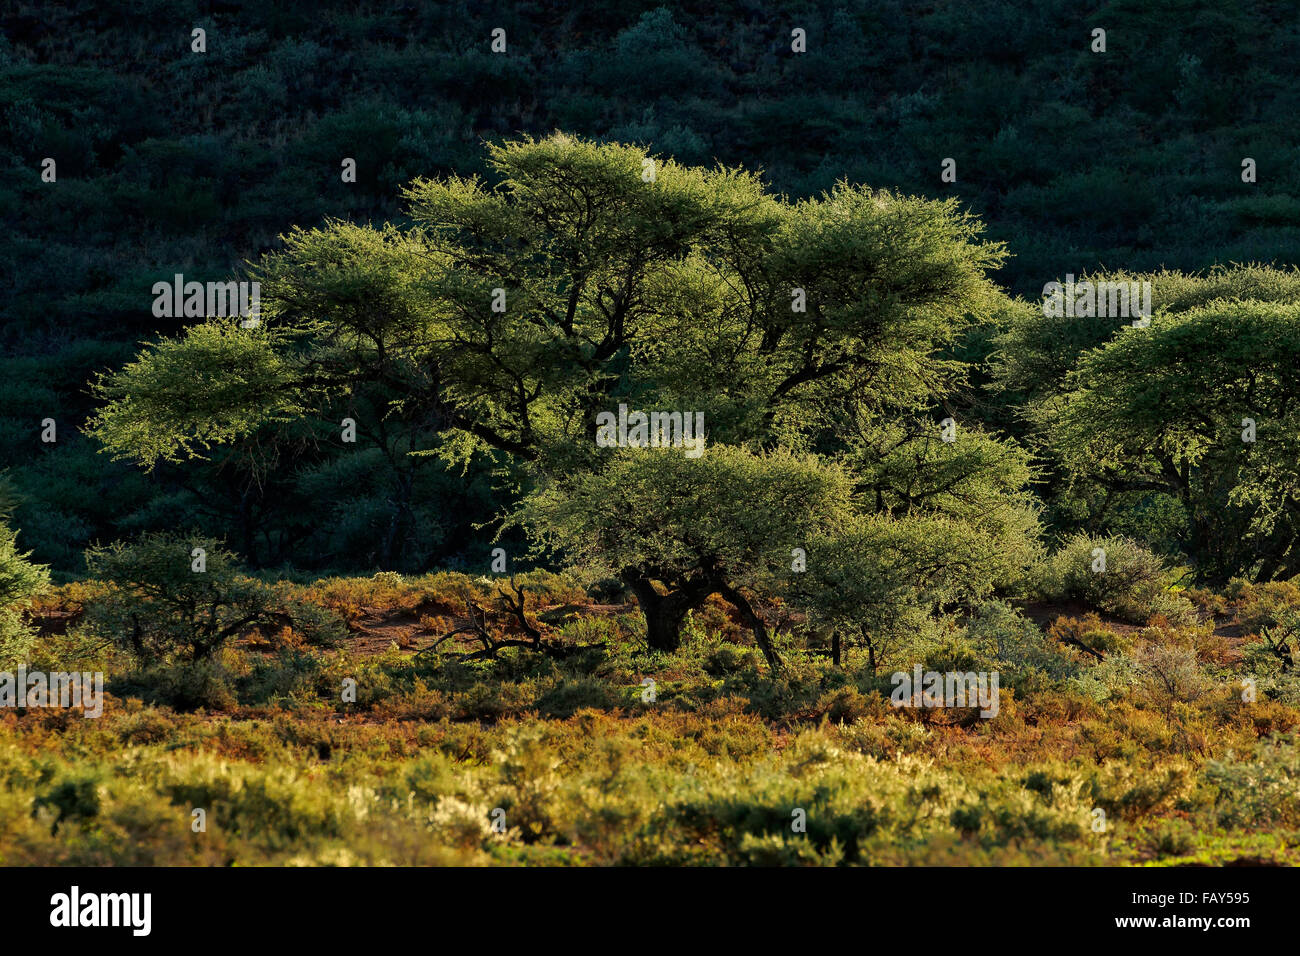 Paysage avec arbres d'Acacia en fin d'après-midi, lumière, Mokala National Park, Afrique du Sud Banque D'Images